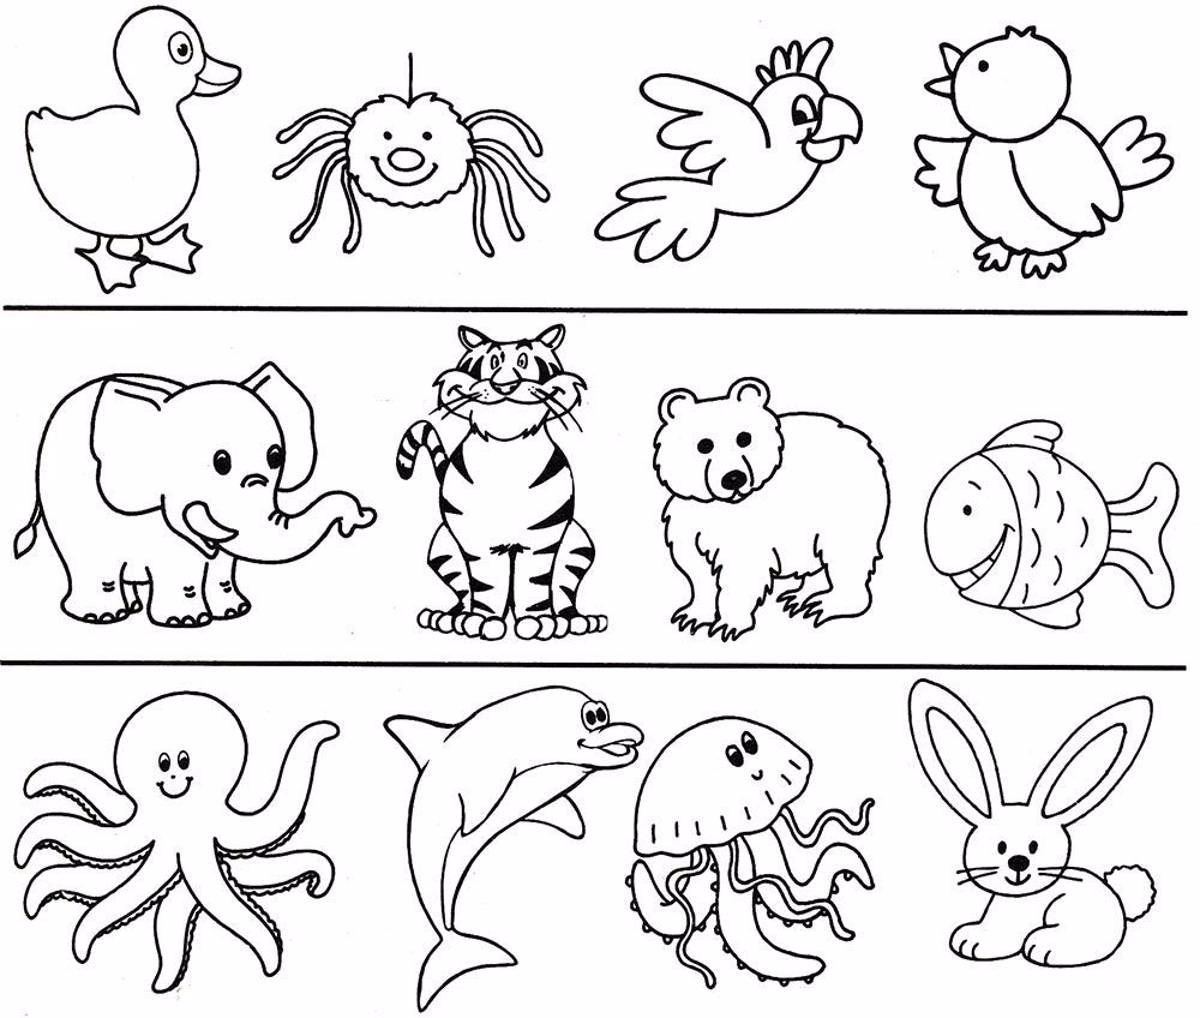 Раскрашивание средняя группа. Раскраски для малышей. Раскраски животные для детей. Раскраскаидля малышей. Раскраски длы я малышей.